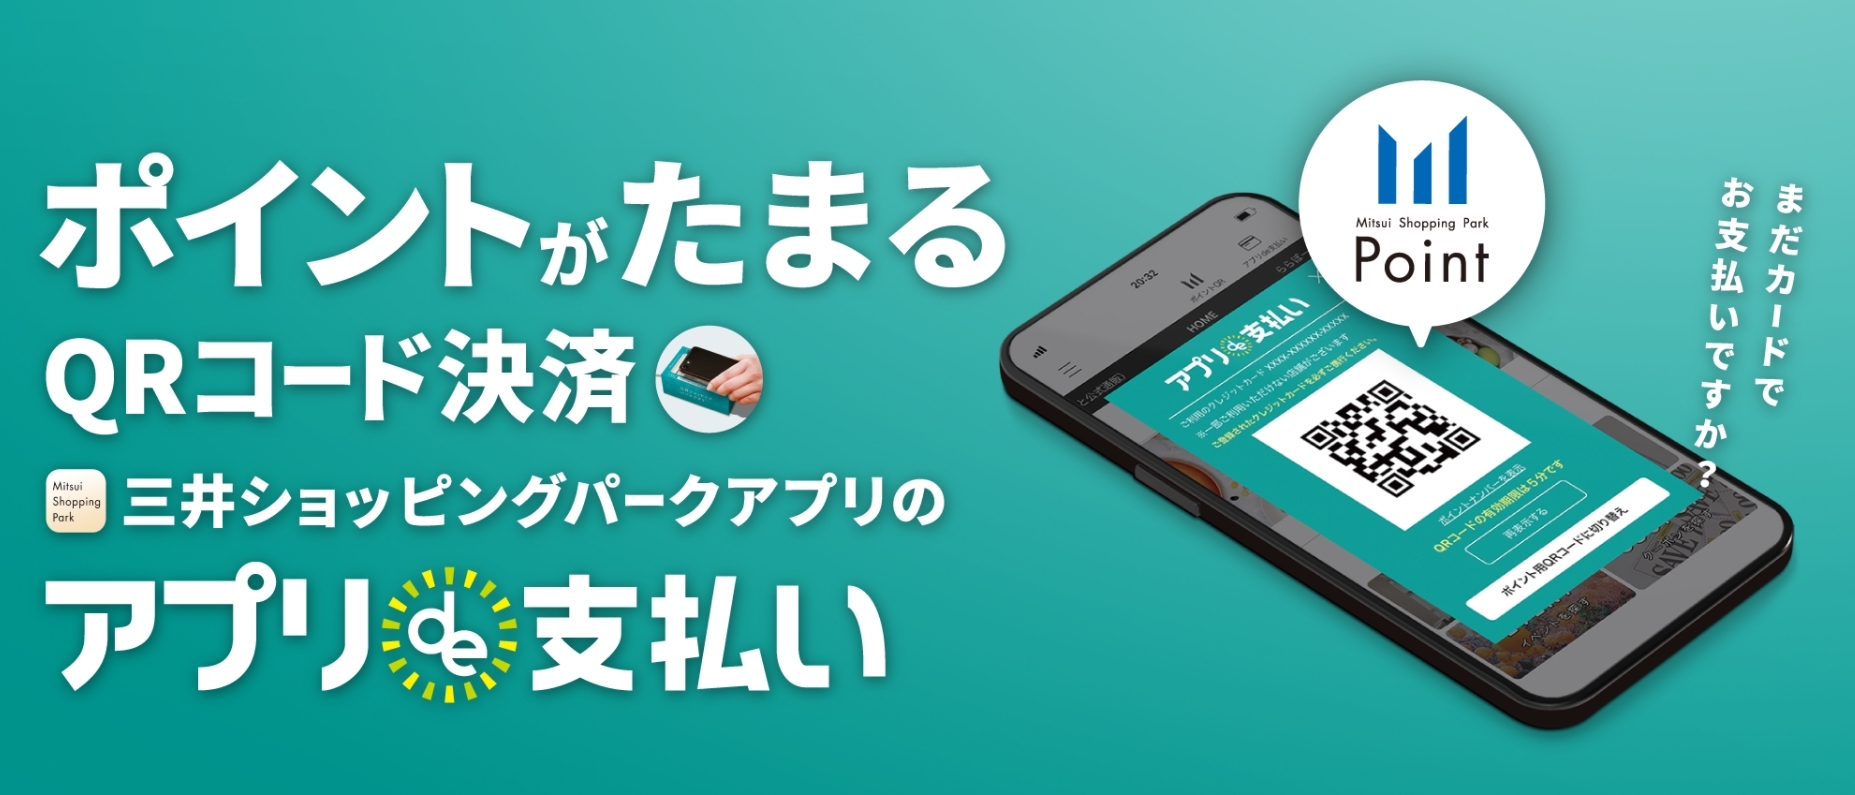 三井ショッピングパークアプリ「アプリde支払い」